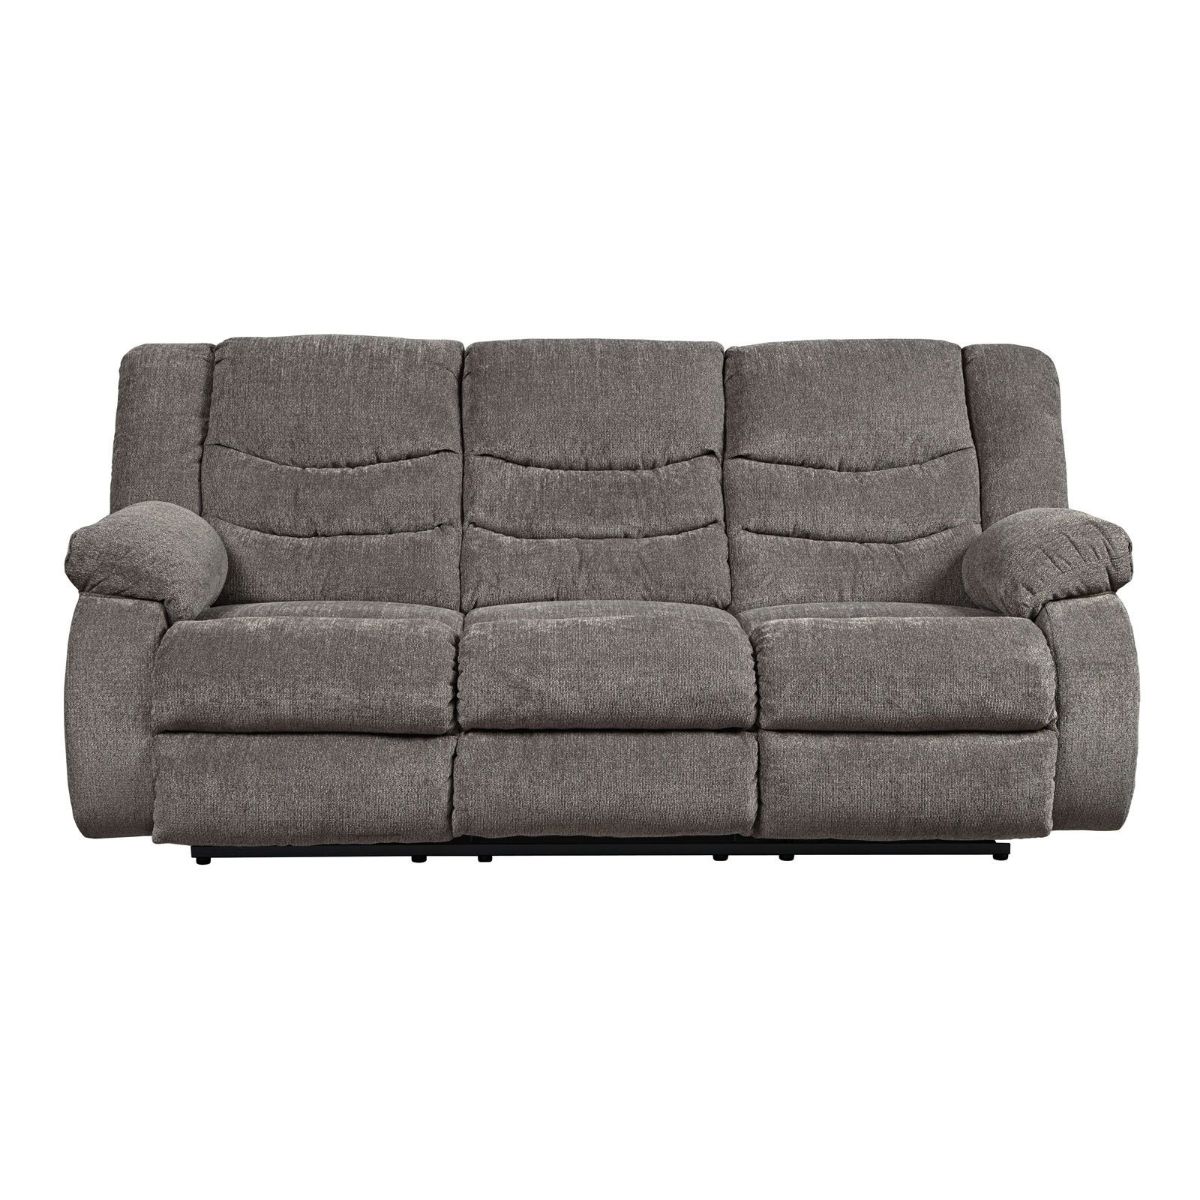 Picture of Tulen Gray Sofa